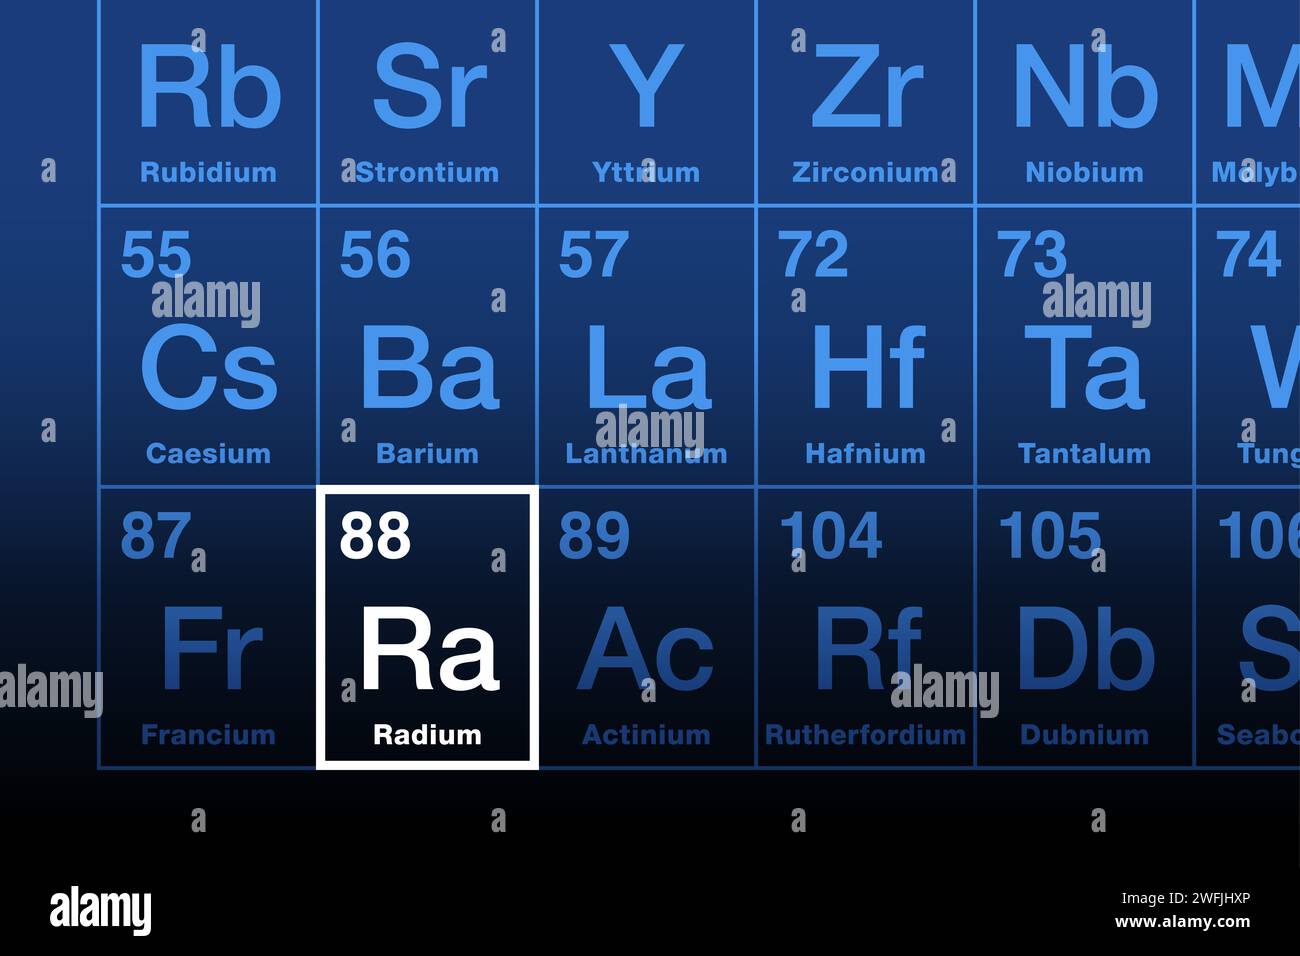 Radiumelement im Periodensystem. Radioaktives Erdalkalimetall mit dem chemischen Elementsymbol Ra und der Atomzahl 88. Zerfällt in Radongas. Stockfoto